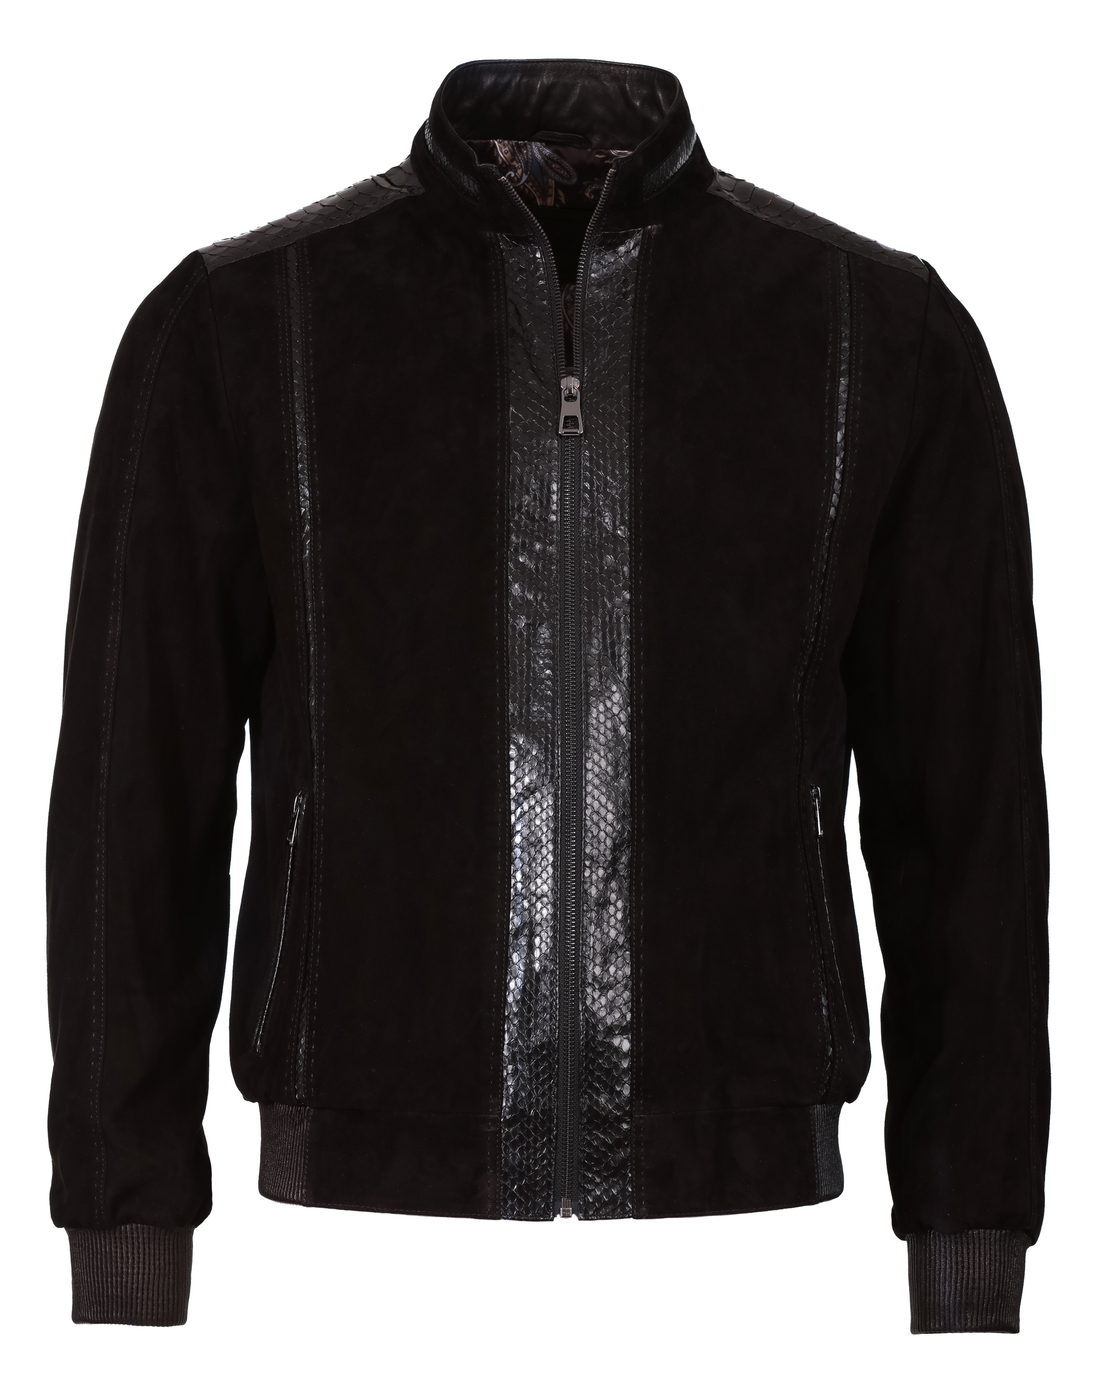 Lambskin Leather Jacket - Black Suede &amp; Snake - Leather Jacket by Urbbana